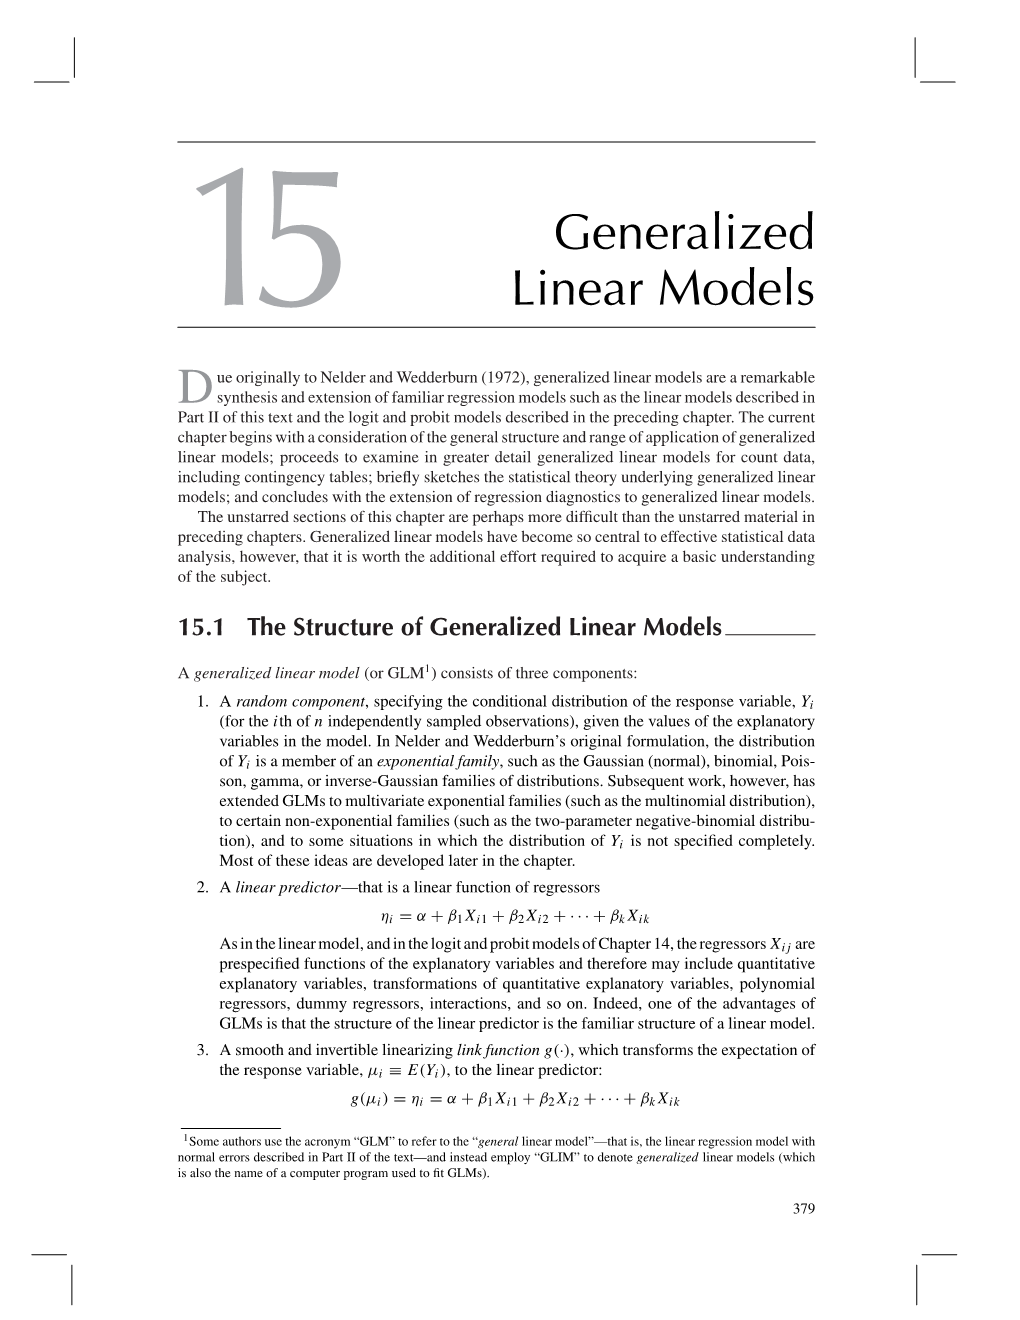 15 Generalized Linear Models